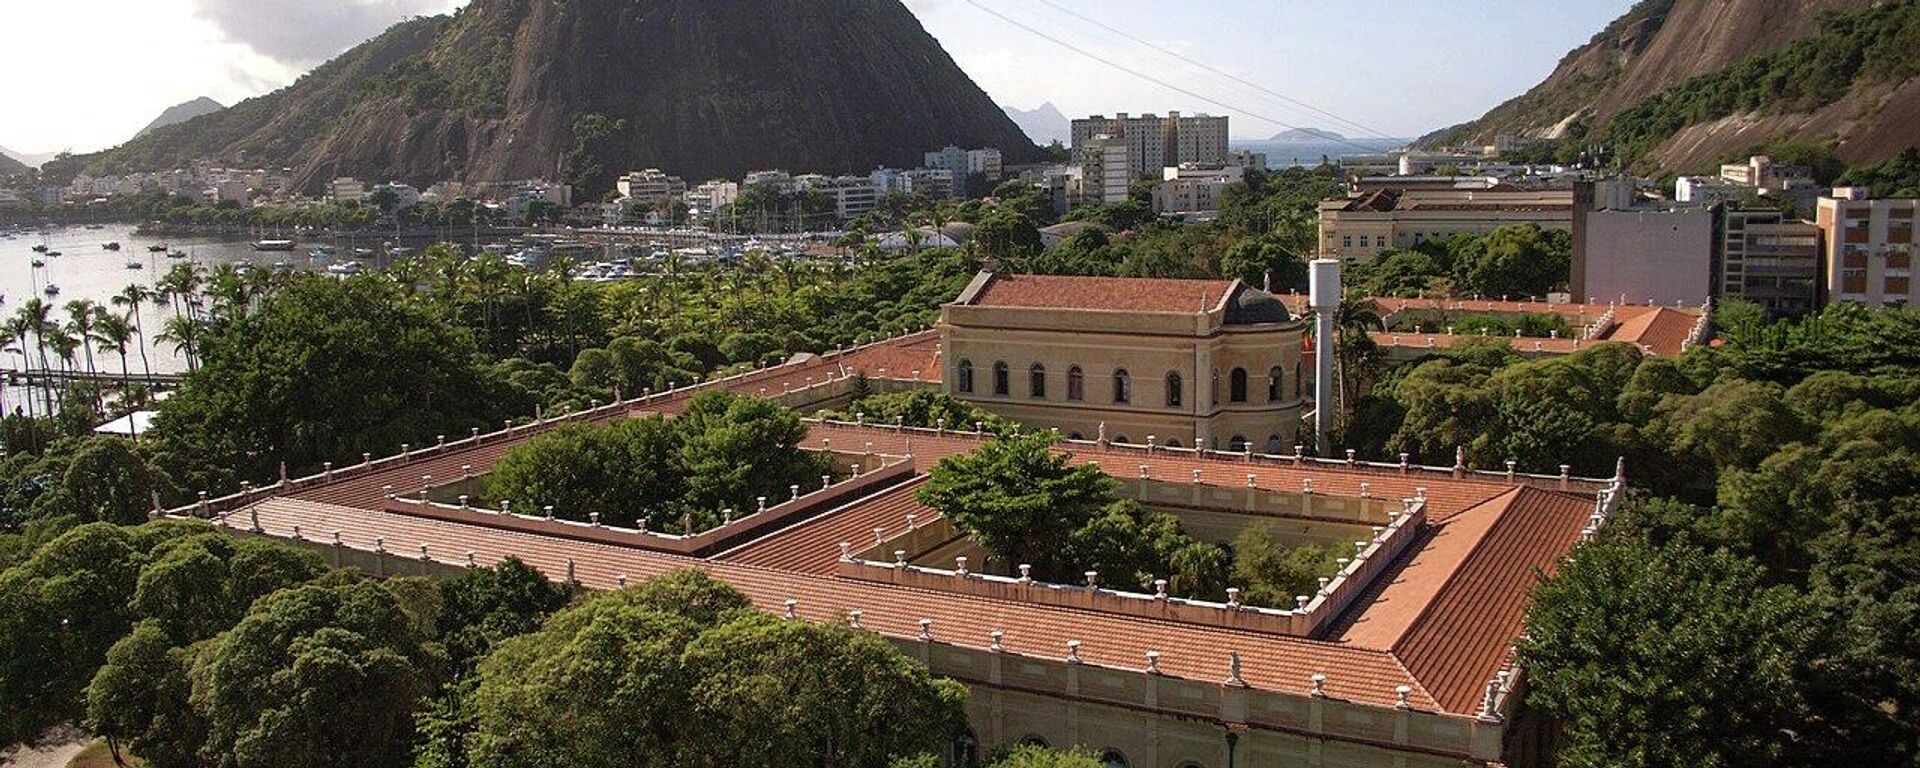 Universidad Federal de Río de Janeiro - Sputnik Mundo, 1920, 24.08.2021